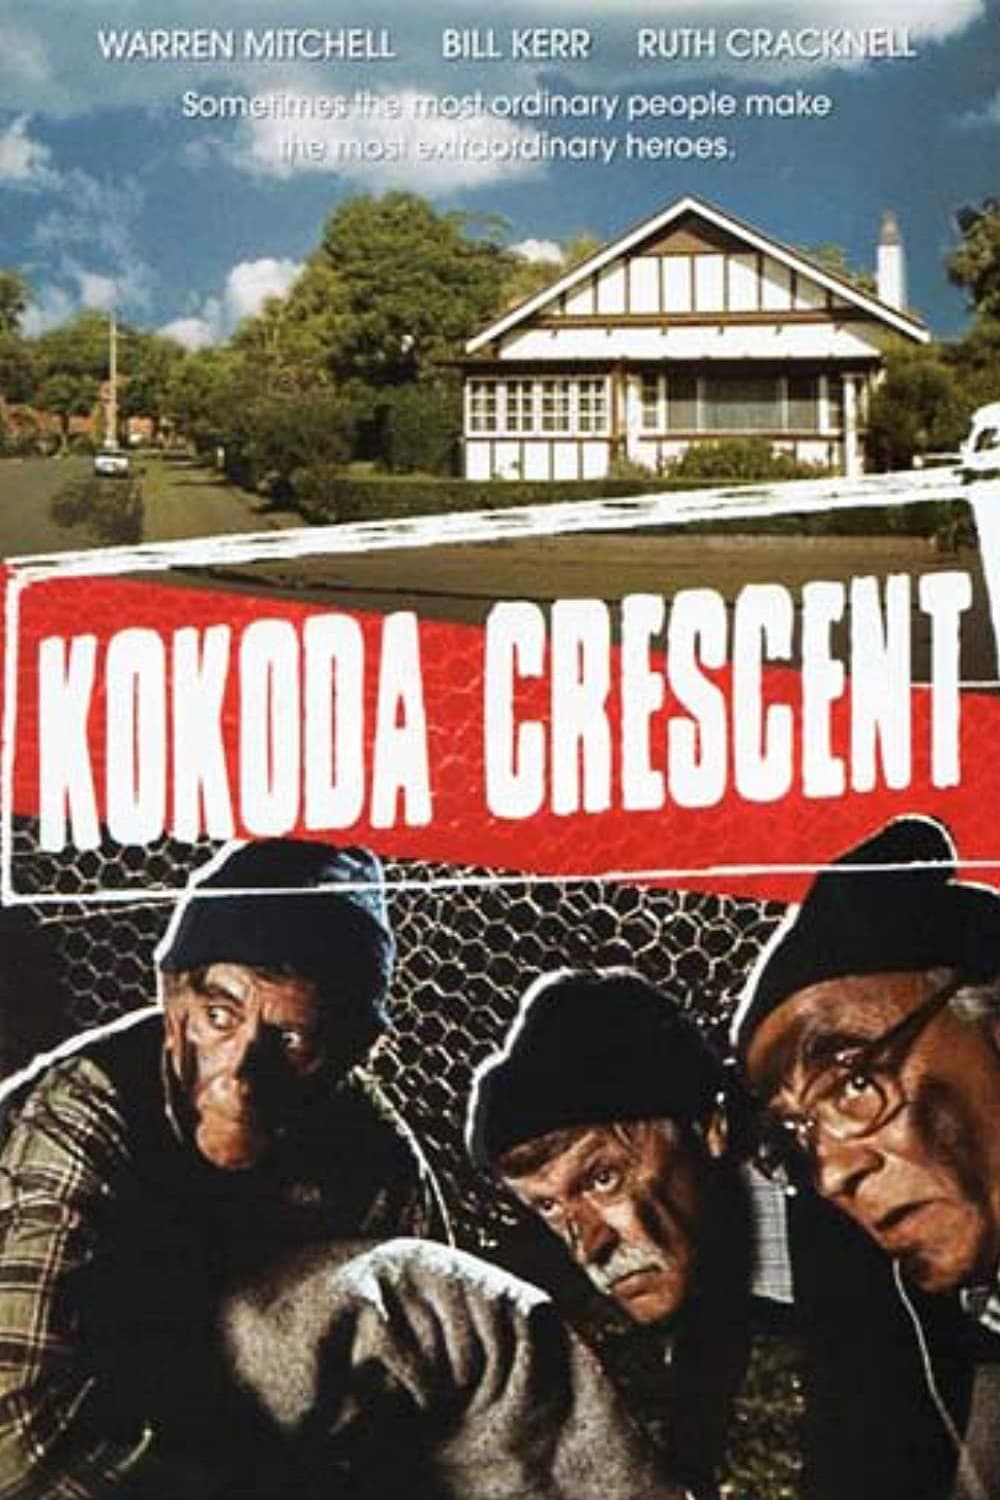 Kokoda Crescent (1989)